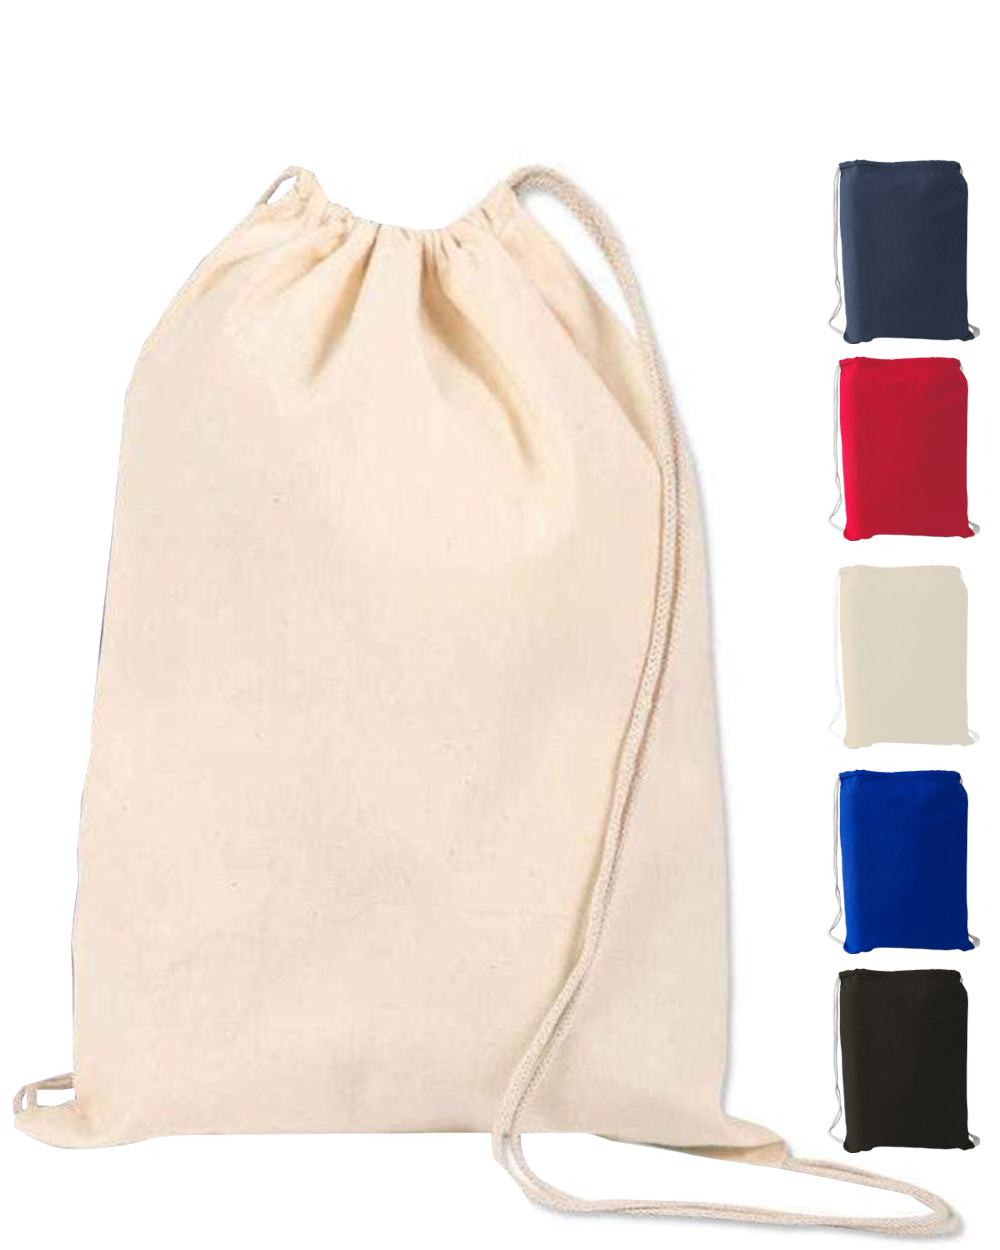 large-size-natural-economical-drawstring-bag